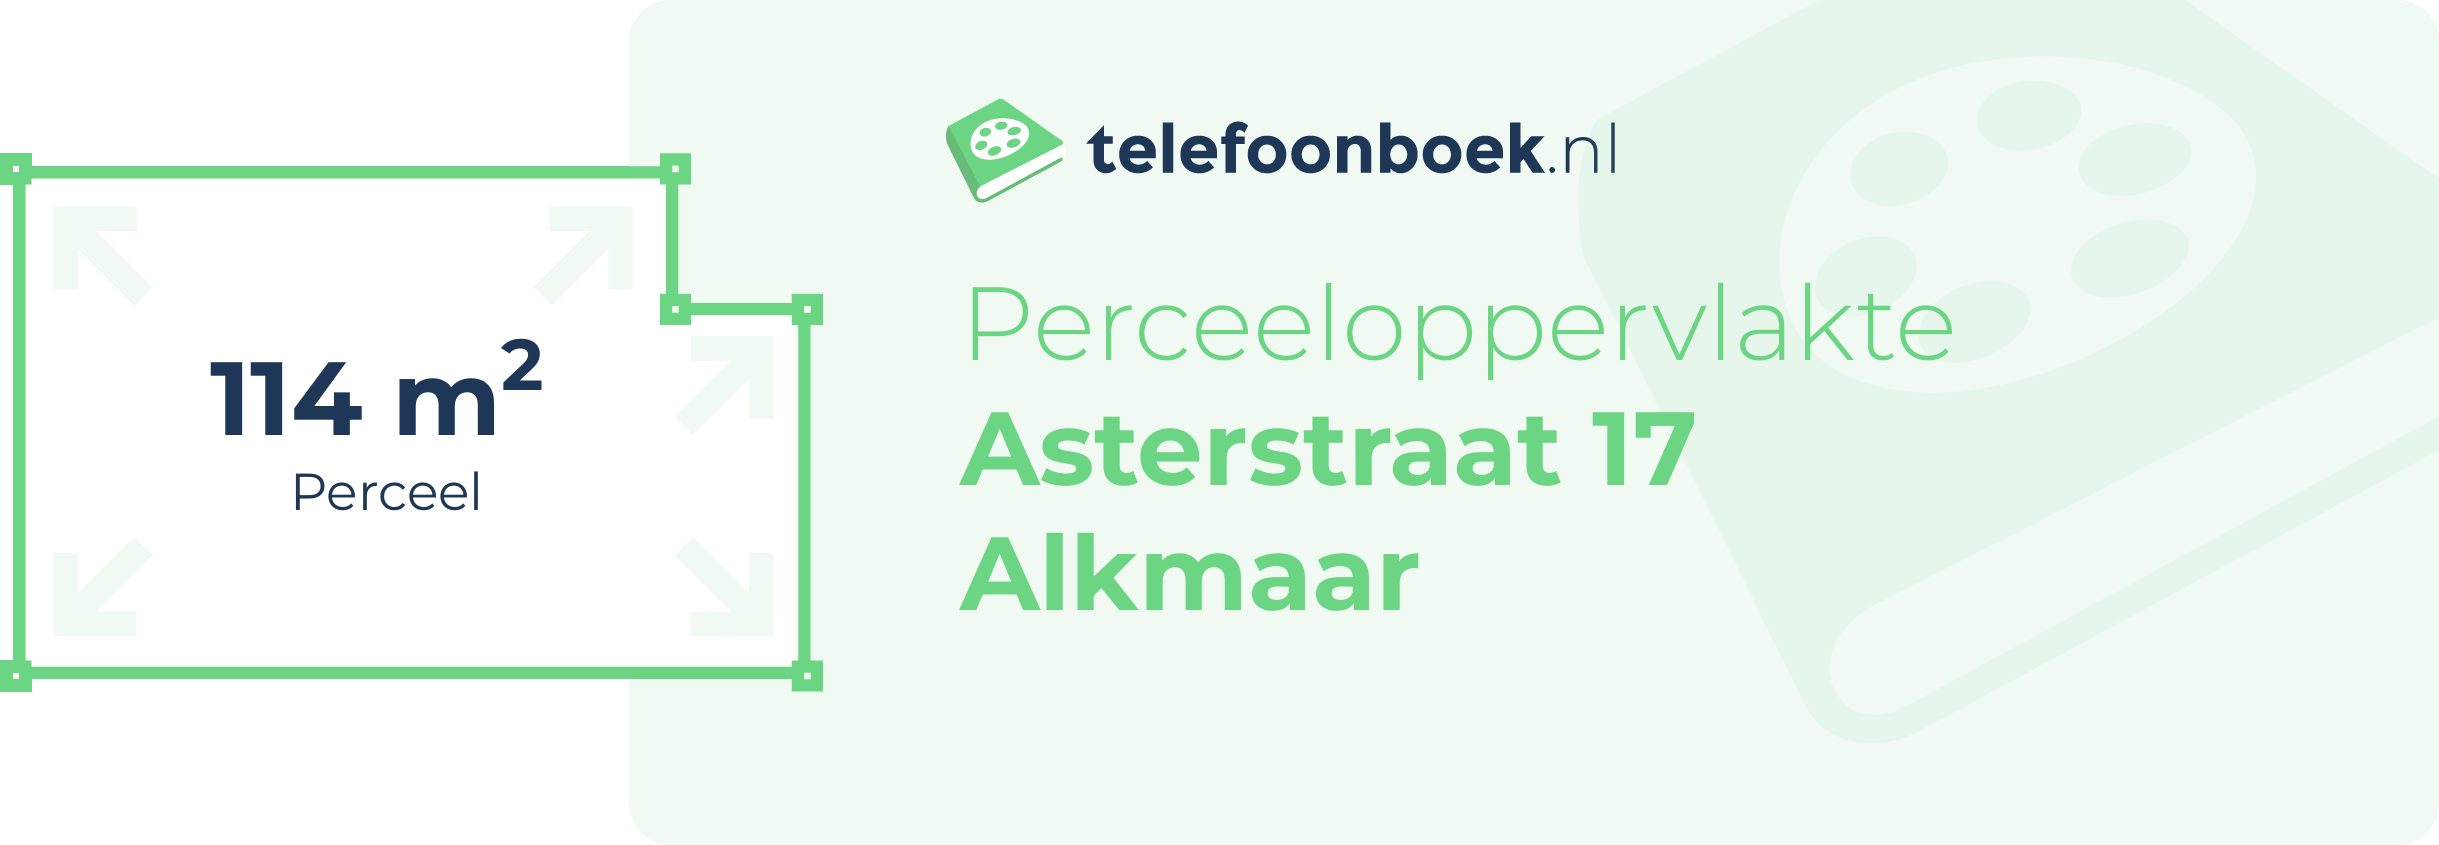 Perceeloppervlakte Asterstraat 17 Alkmaar